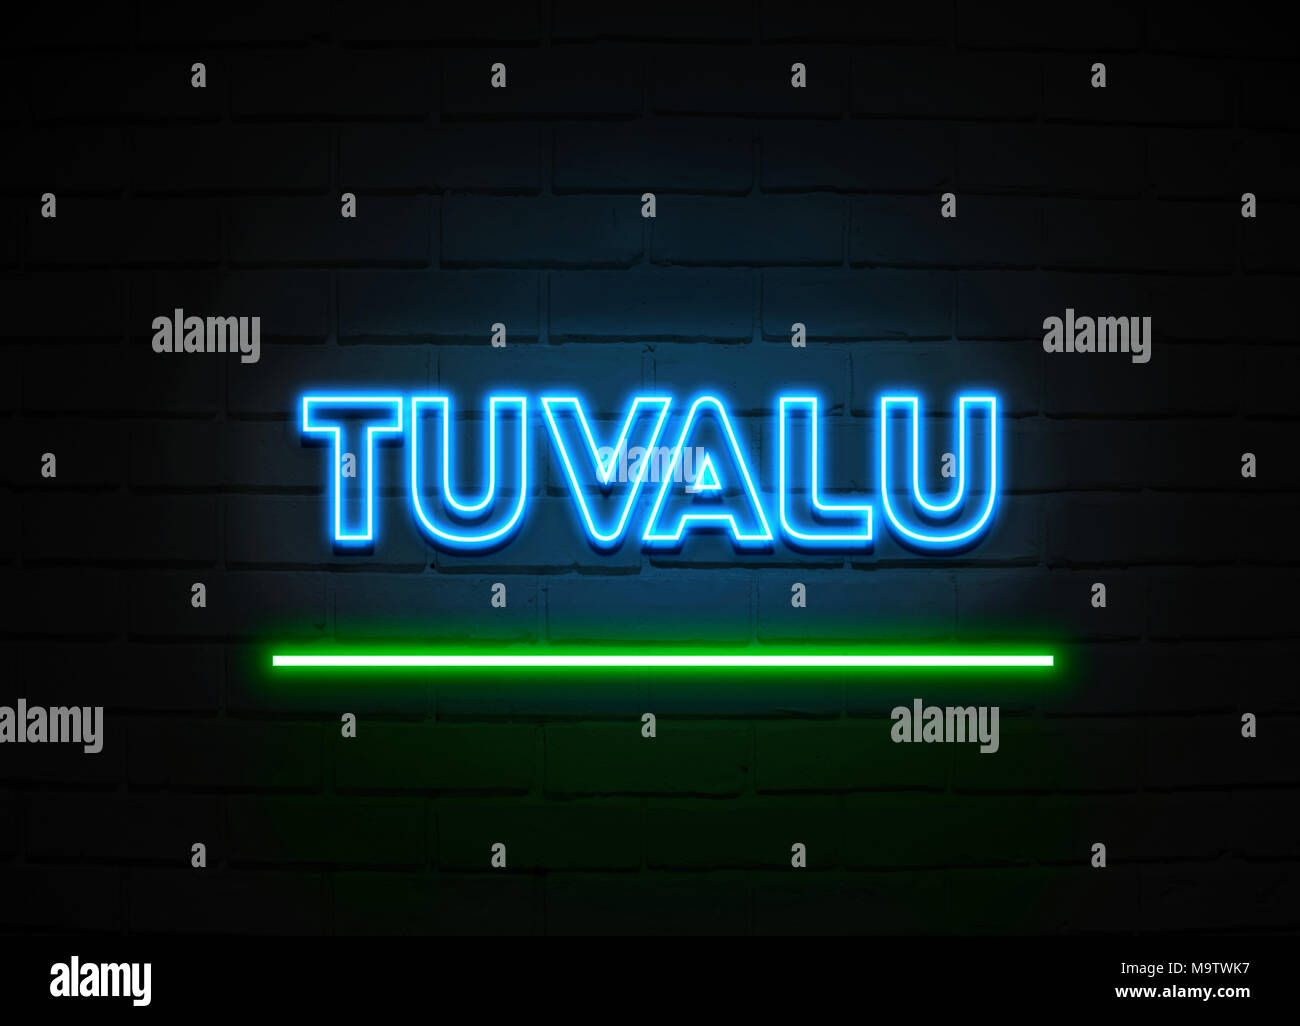 Cartel de neón Tuvalu - cartel de neón brillante sobre pared brickwall - 3D prestados royalty free ilustración. Foto de stock